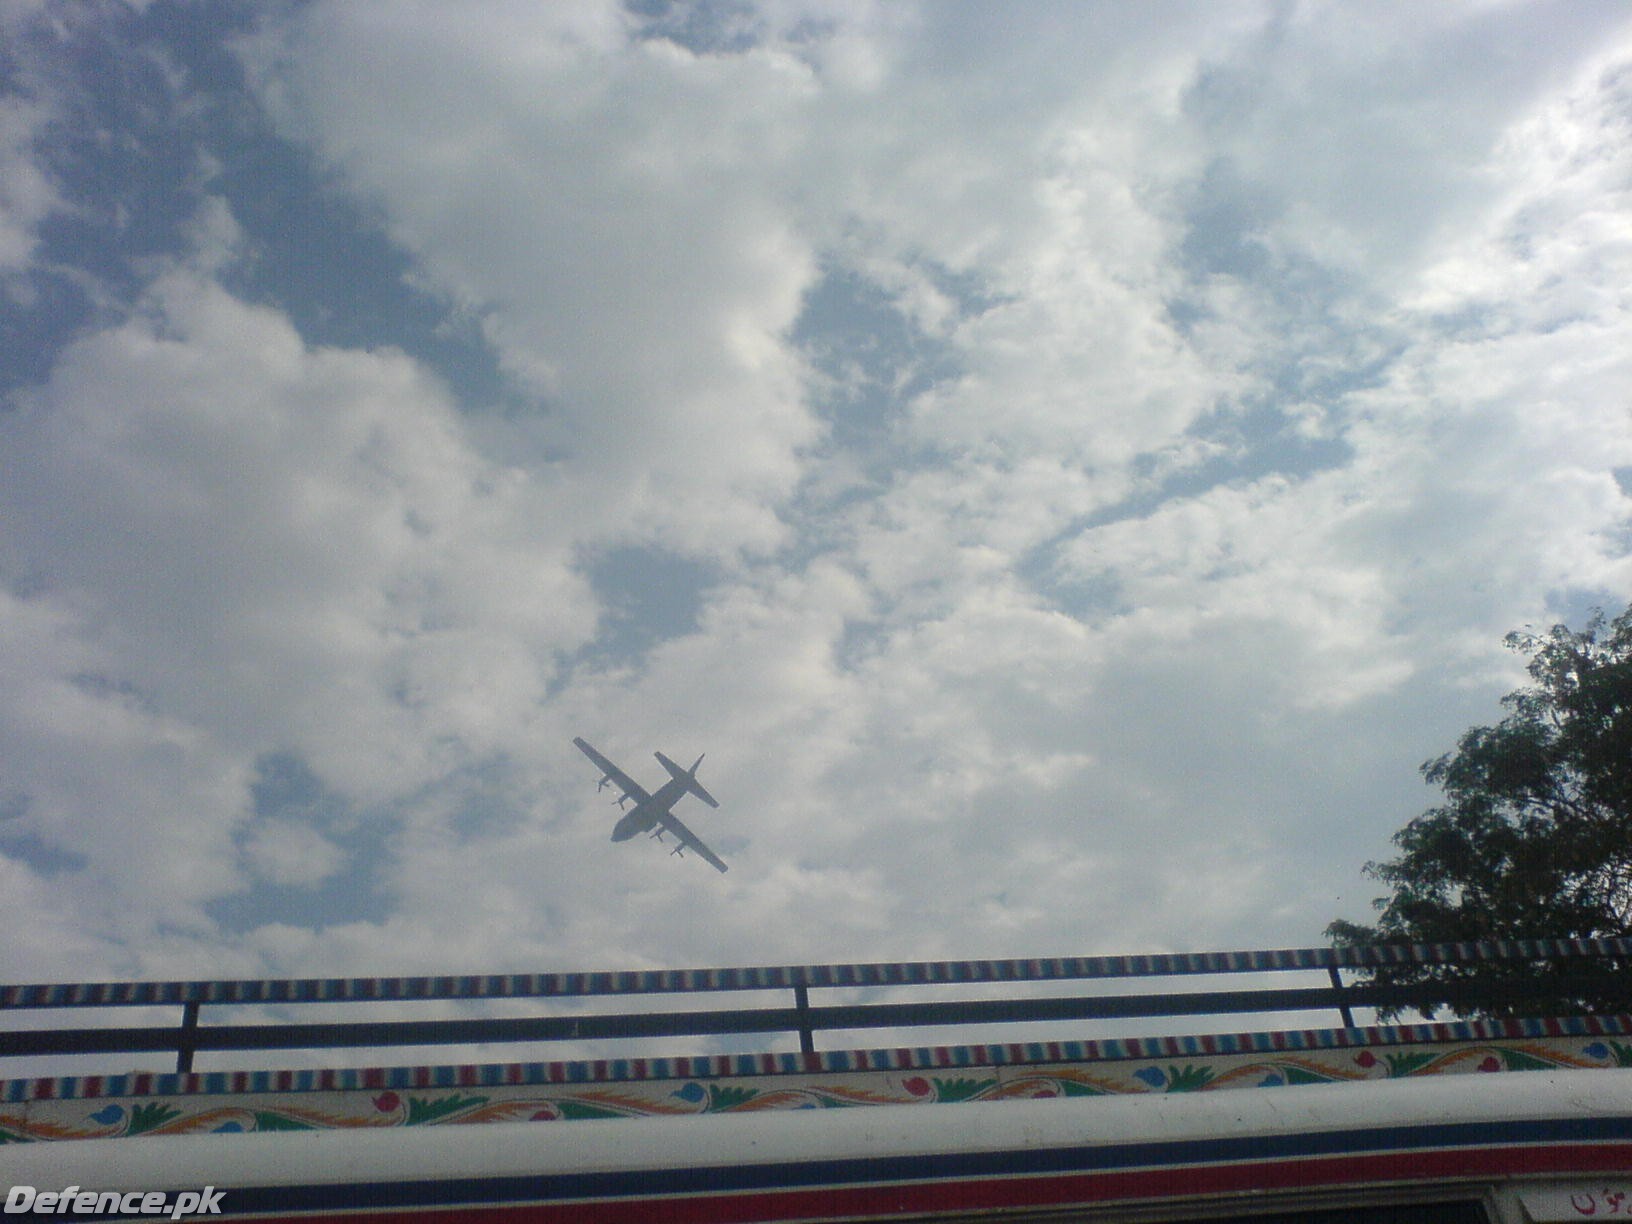 C-130 Flying over Nawabshah.